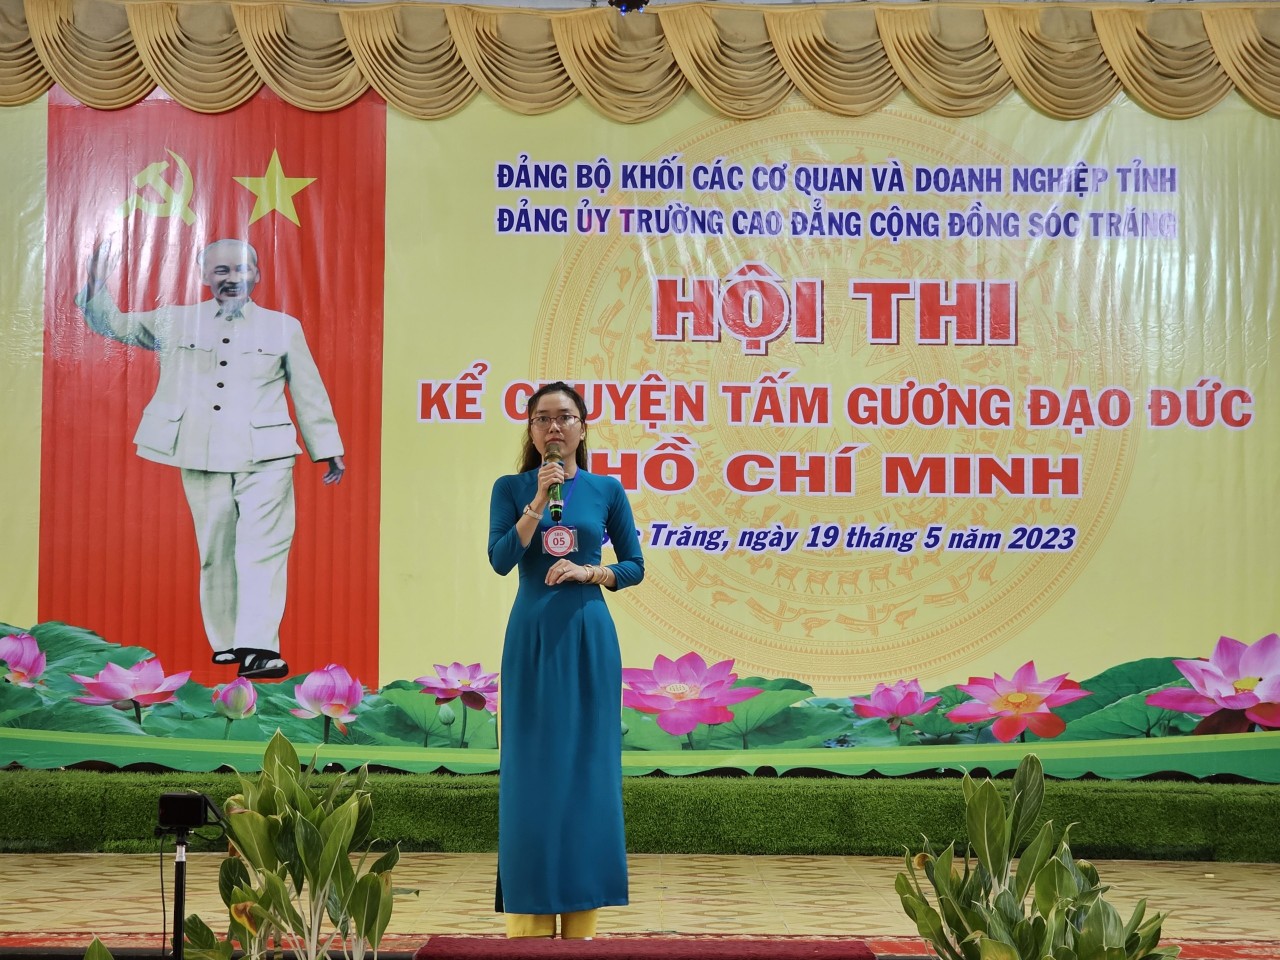 Chung kết hội thi “Kể chuyện về tấm gương đạo đức Hồ Chí Minh”năm 2023